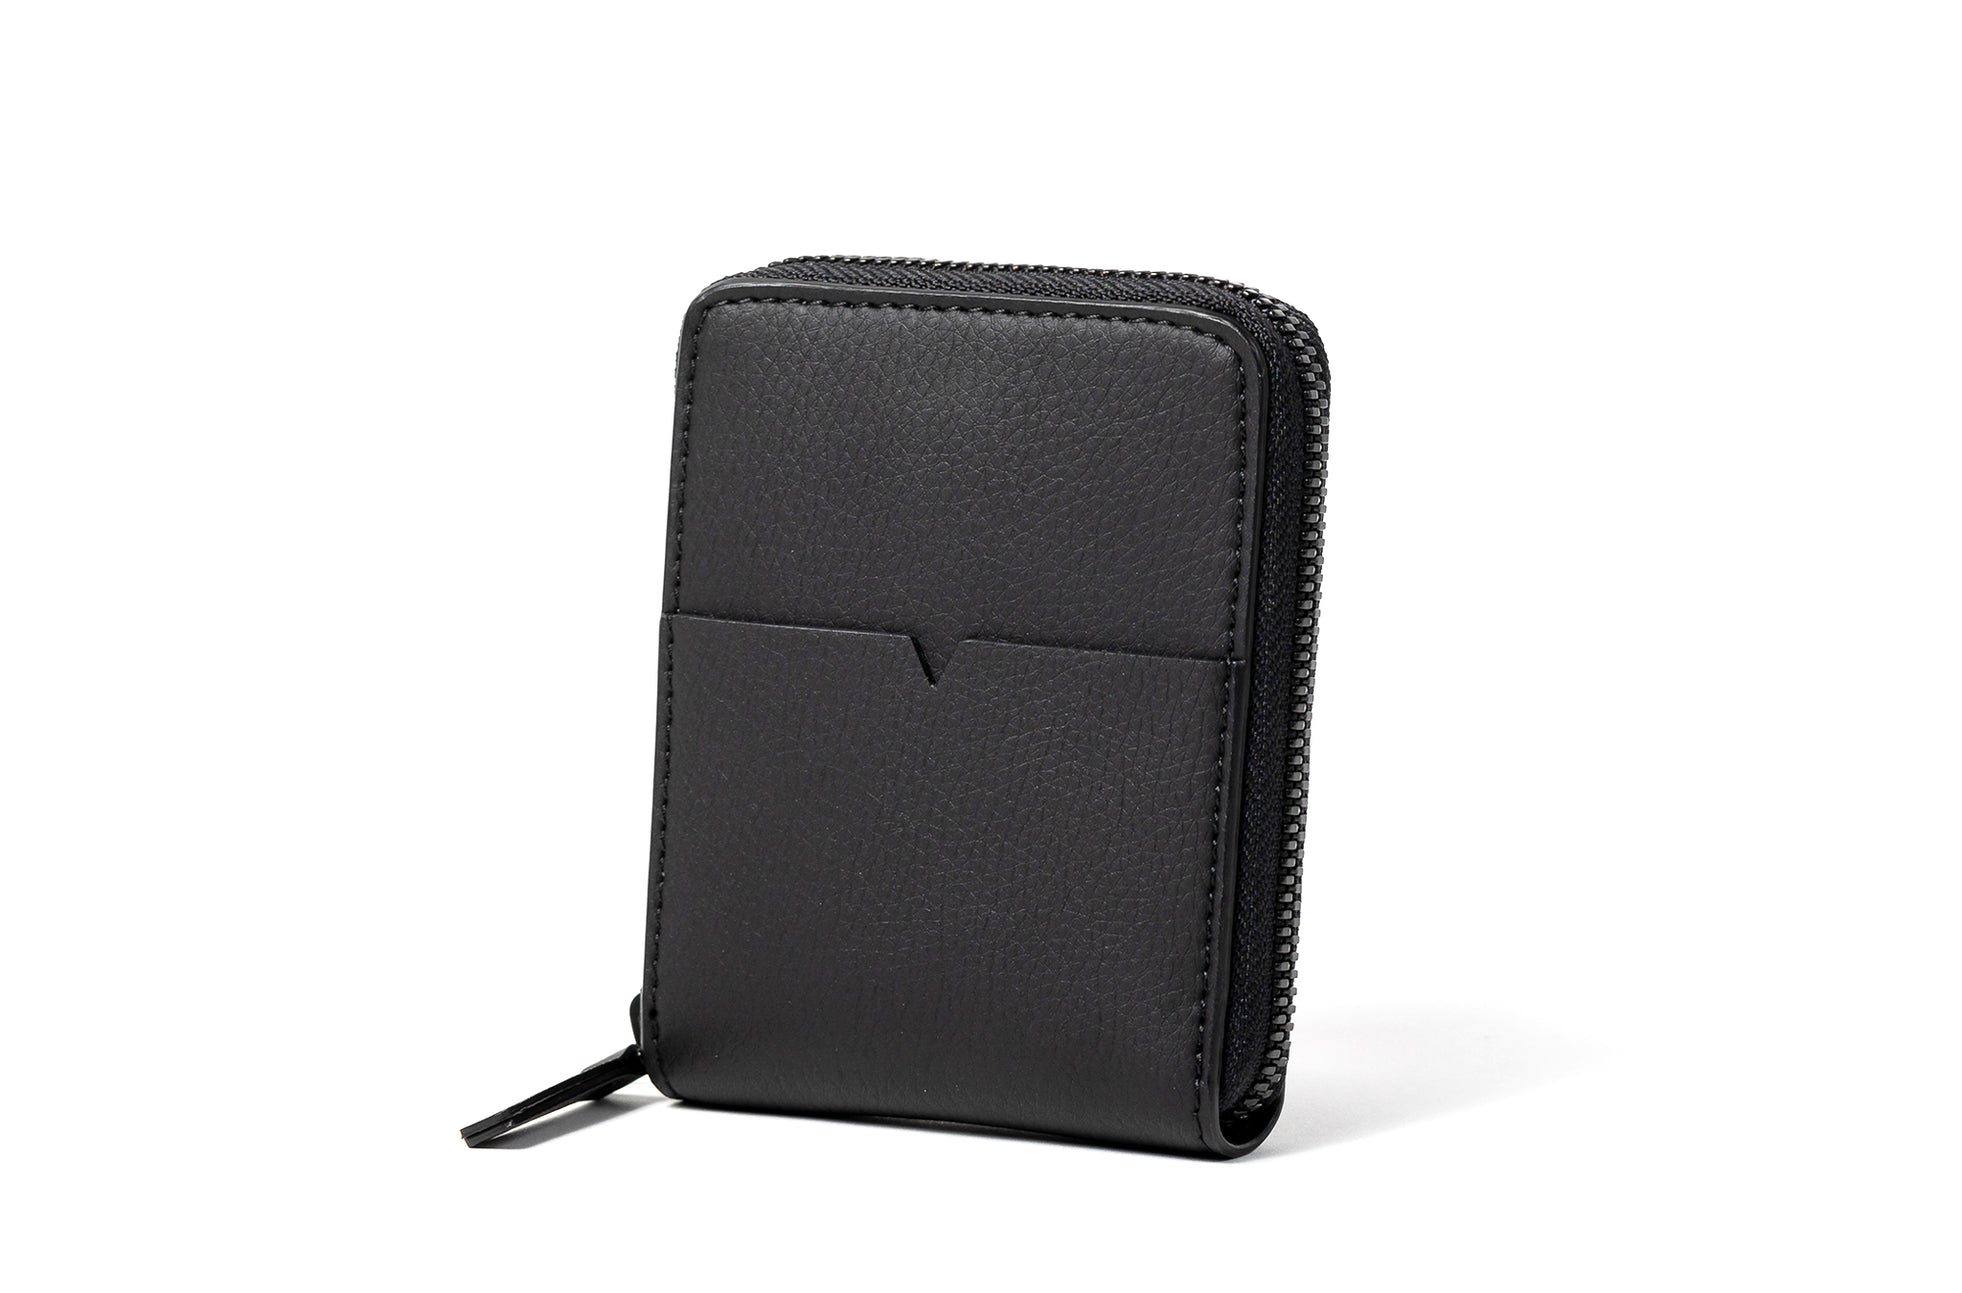 The Zip-Around Wallet in Technik in Black image 5